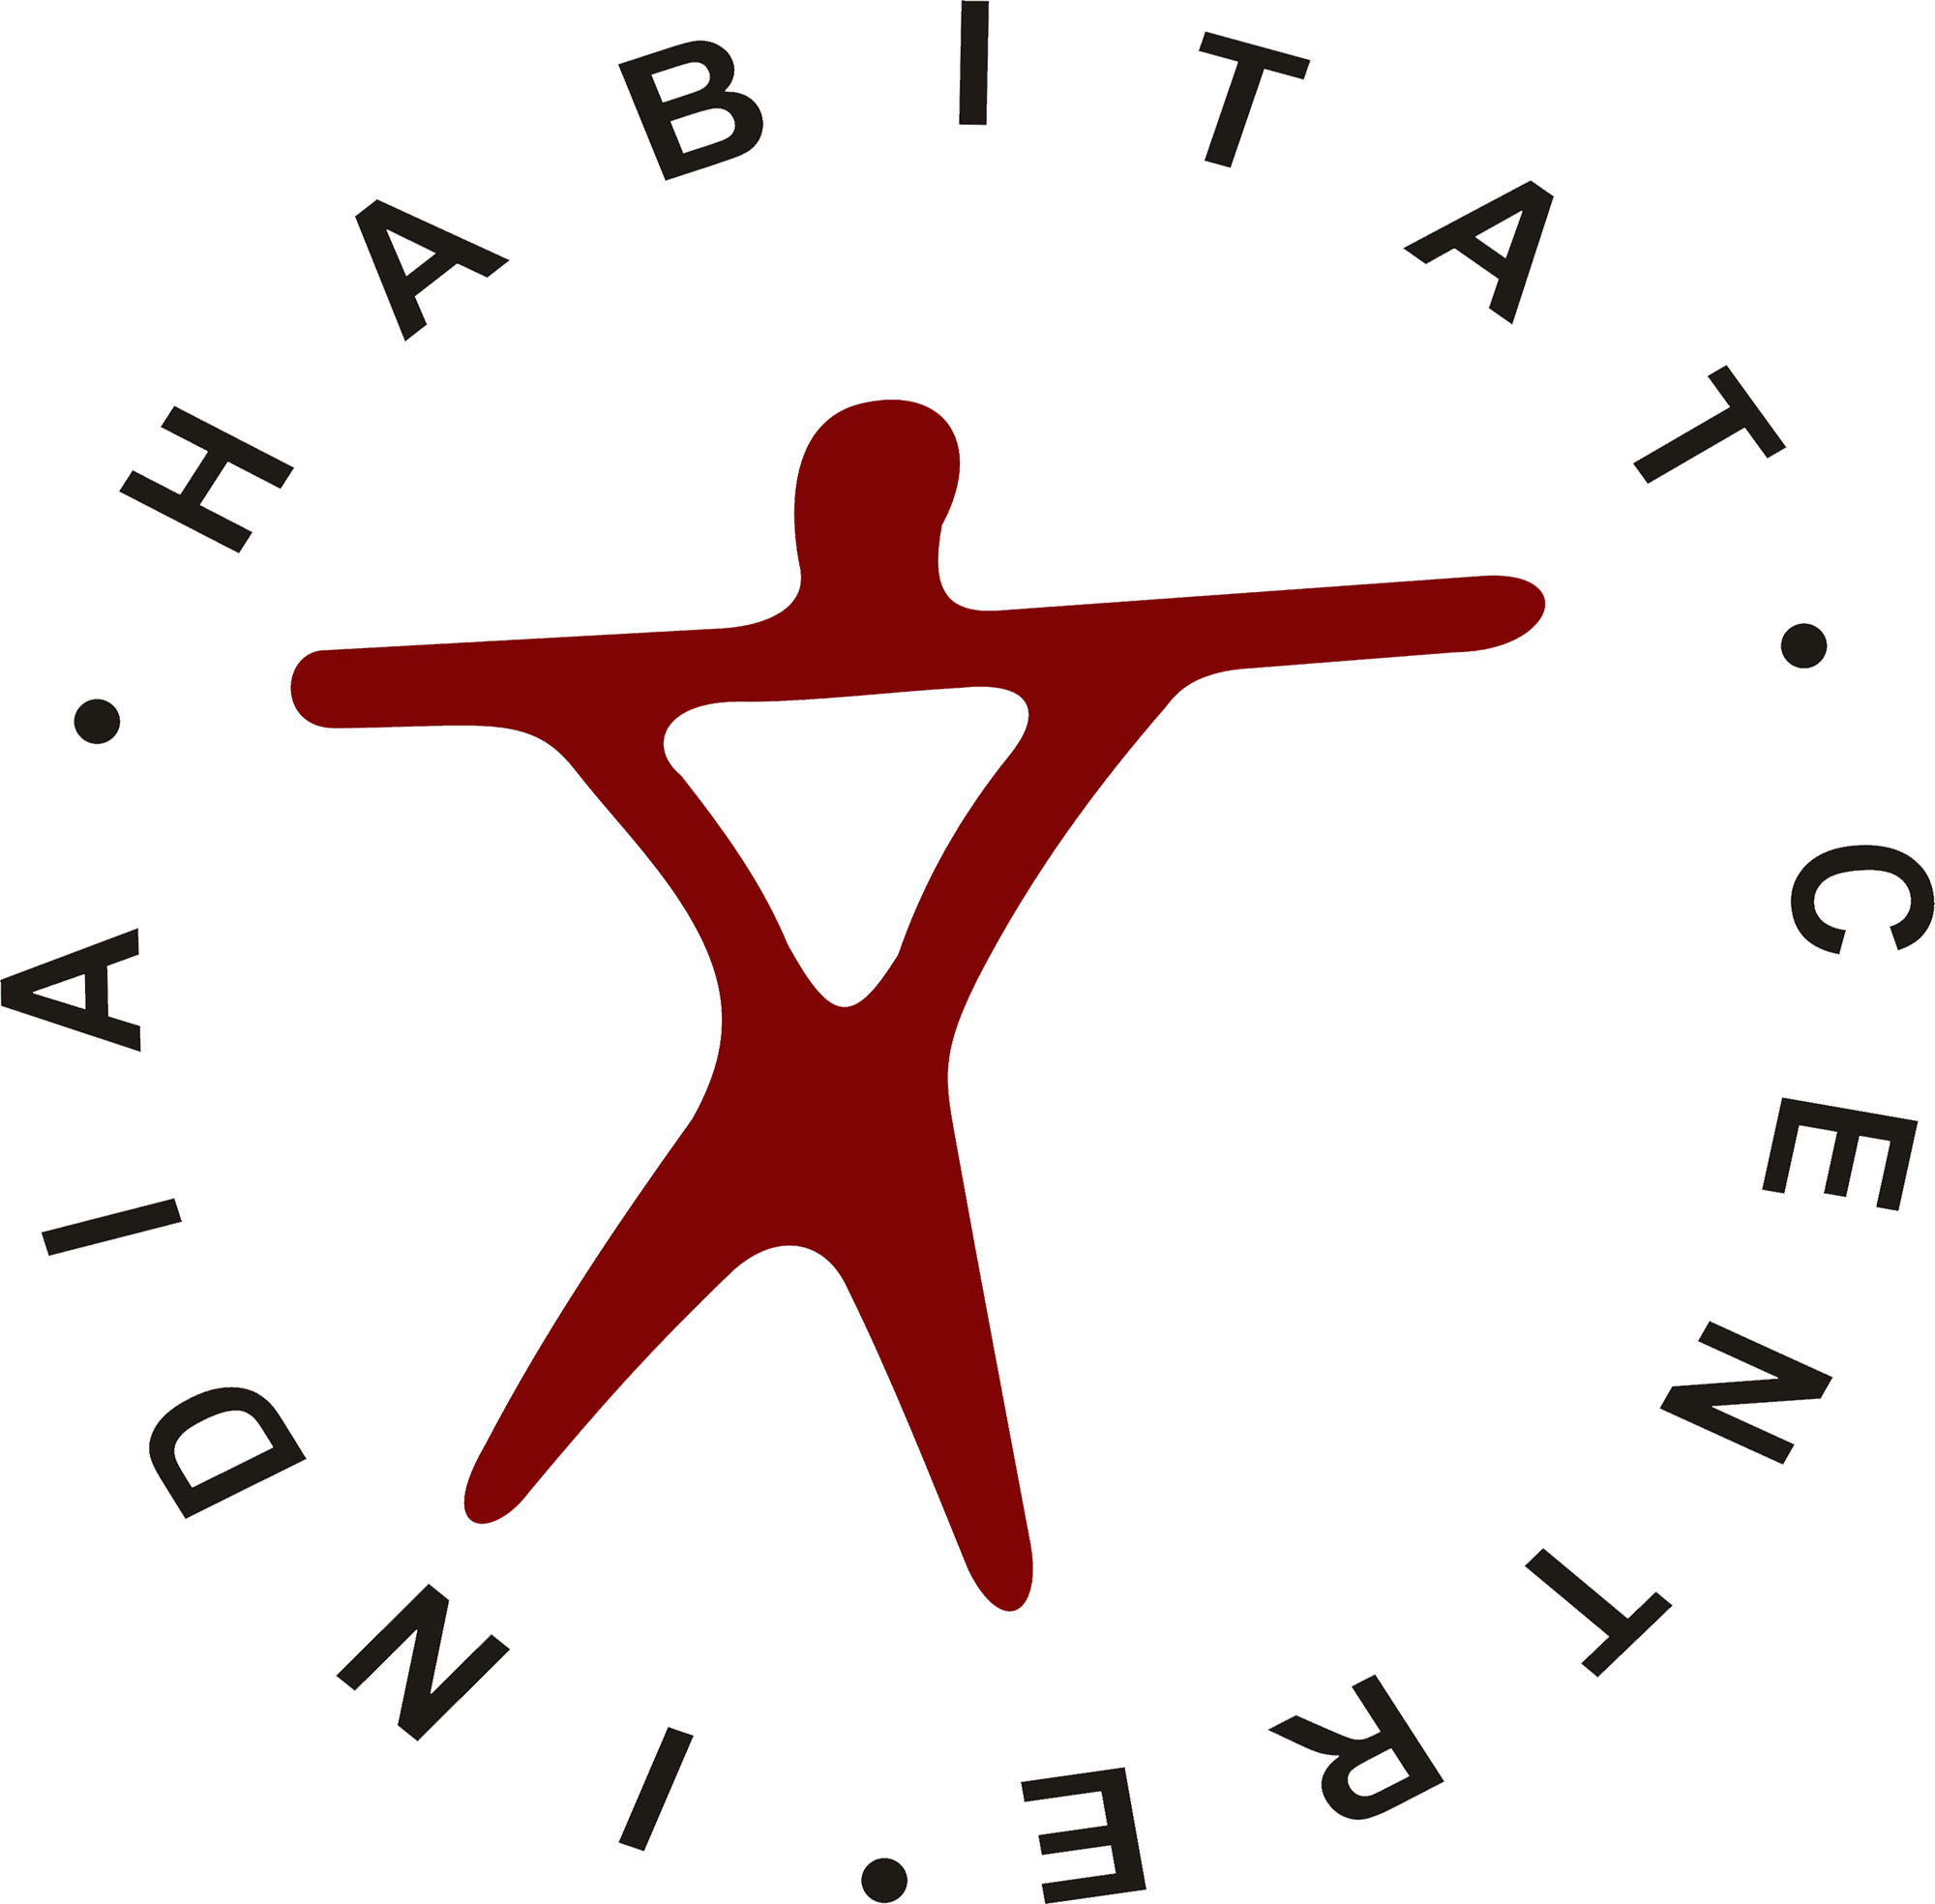 Inida Habitat Centre